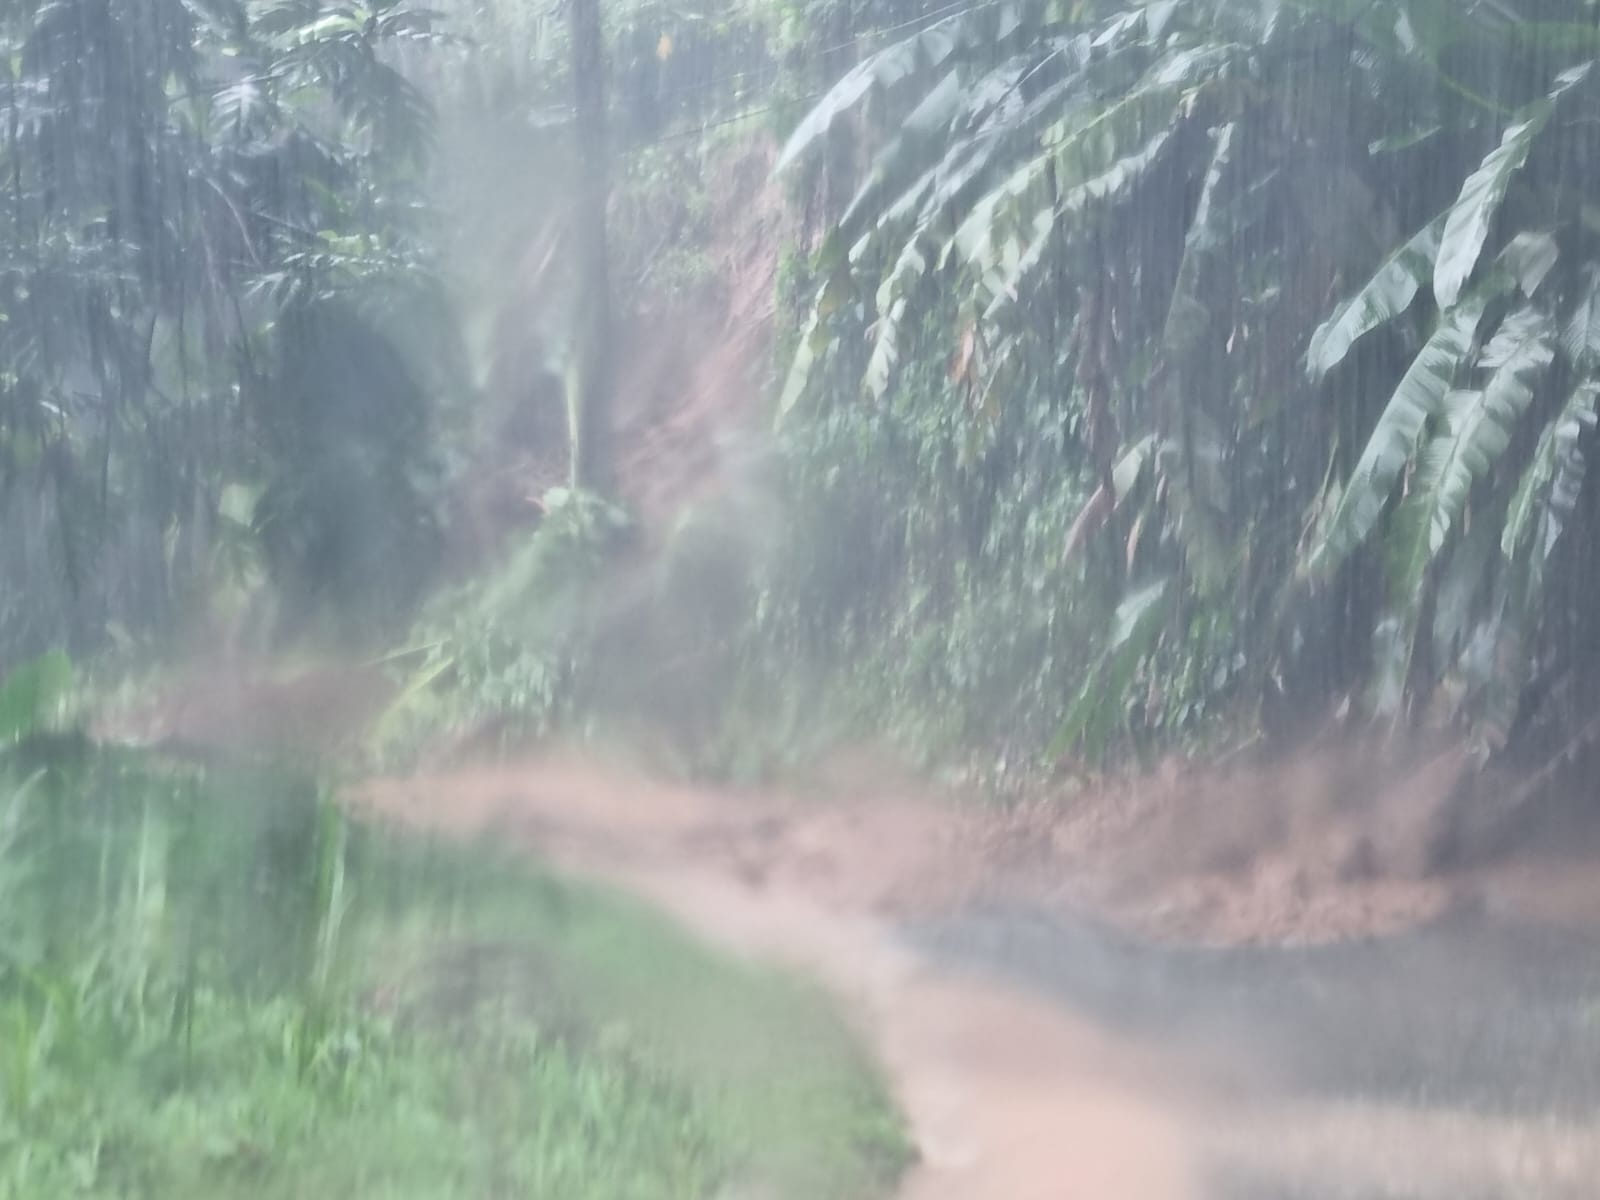     Fortes pluies du 6 novembre dernier : l’état de catastrophe naturelle reconnu à Trinité

